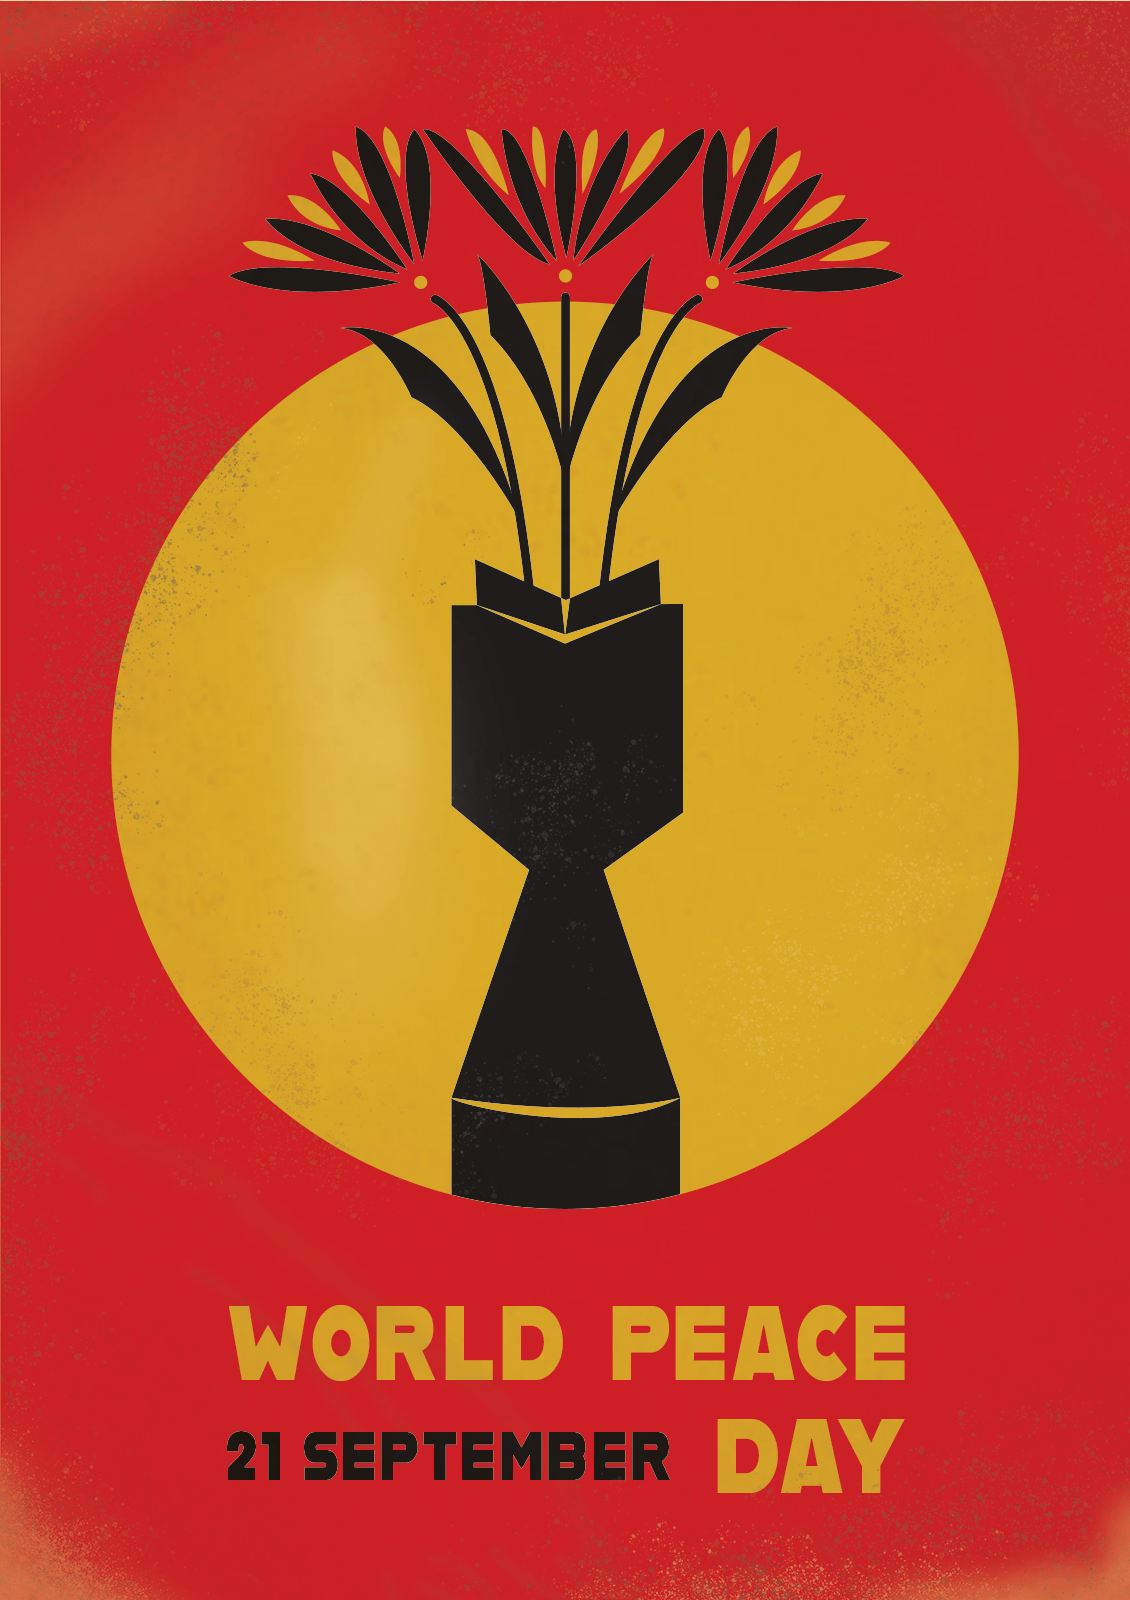 "World peace day" - 
Se projekt